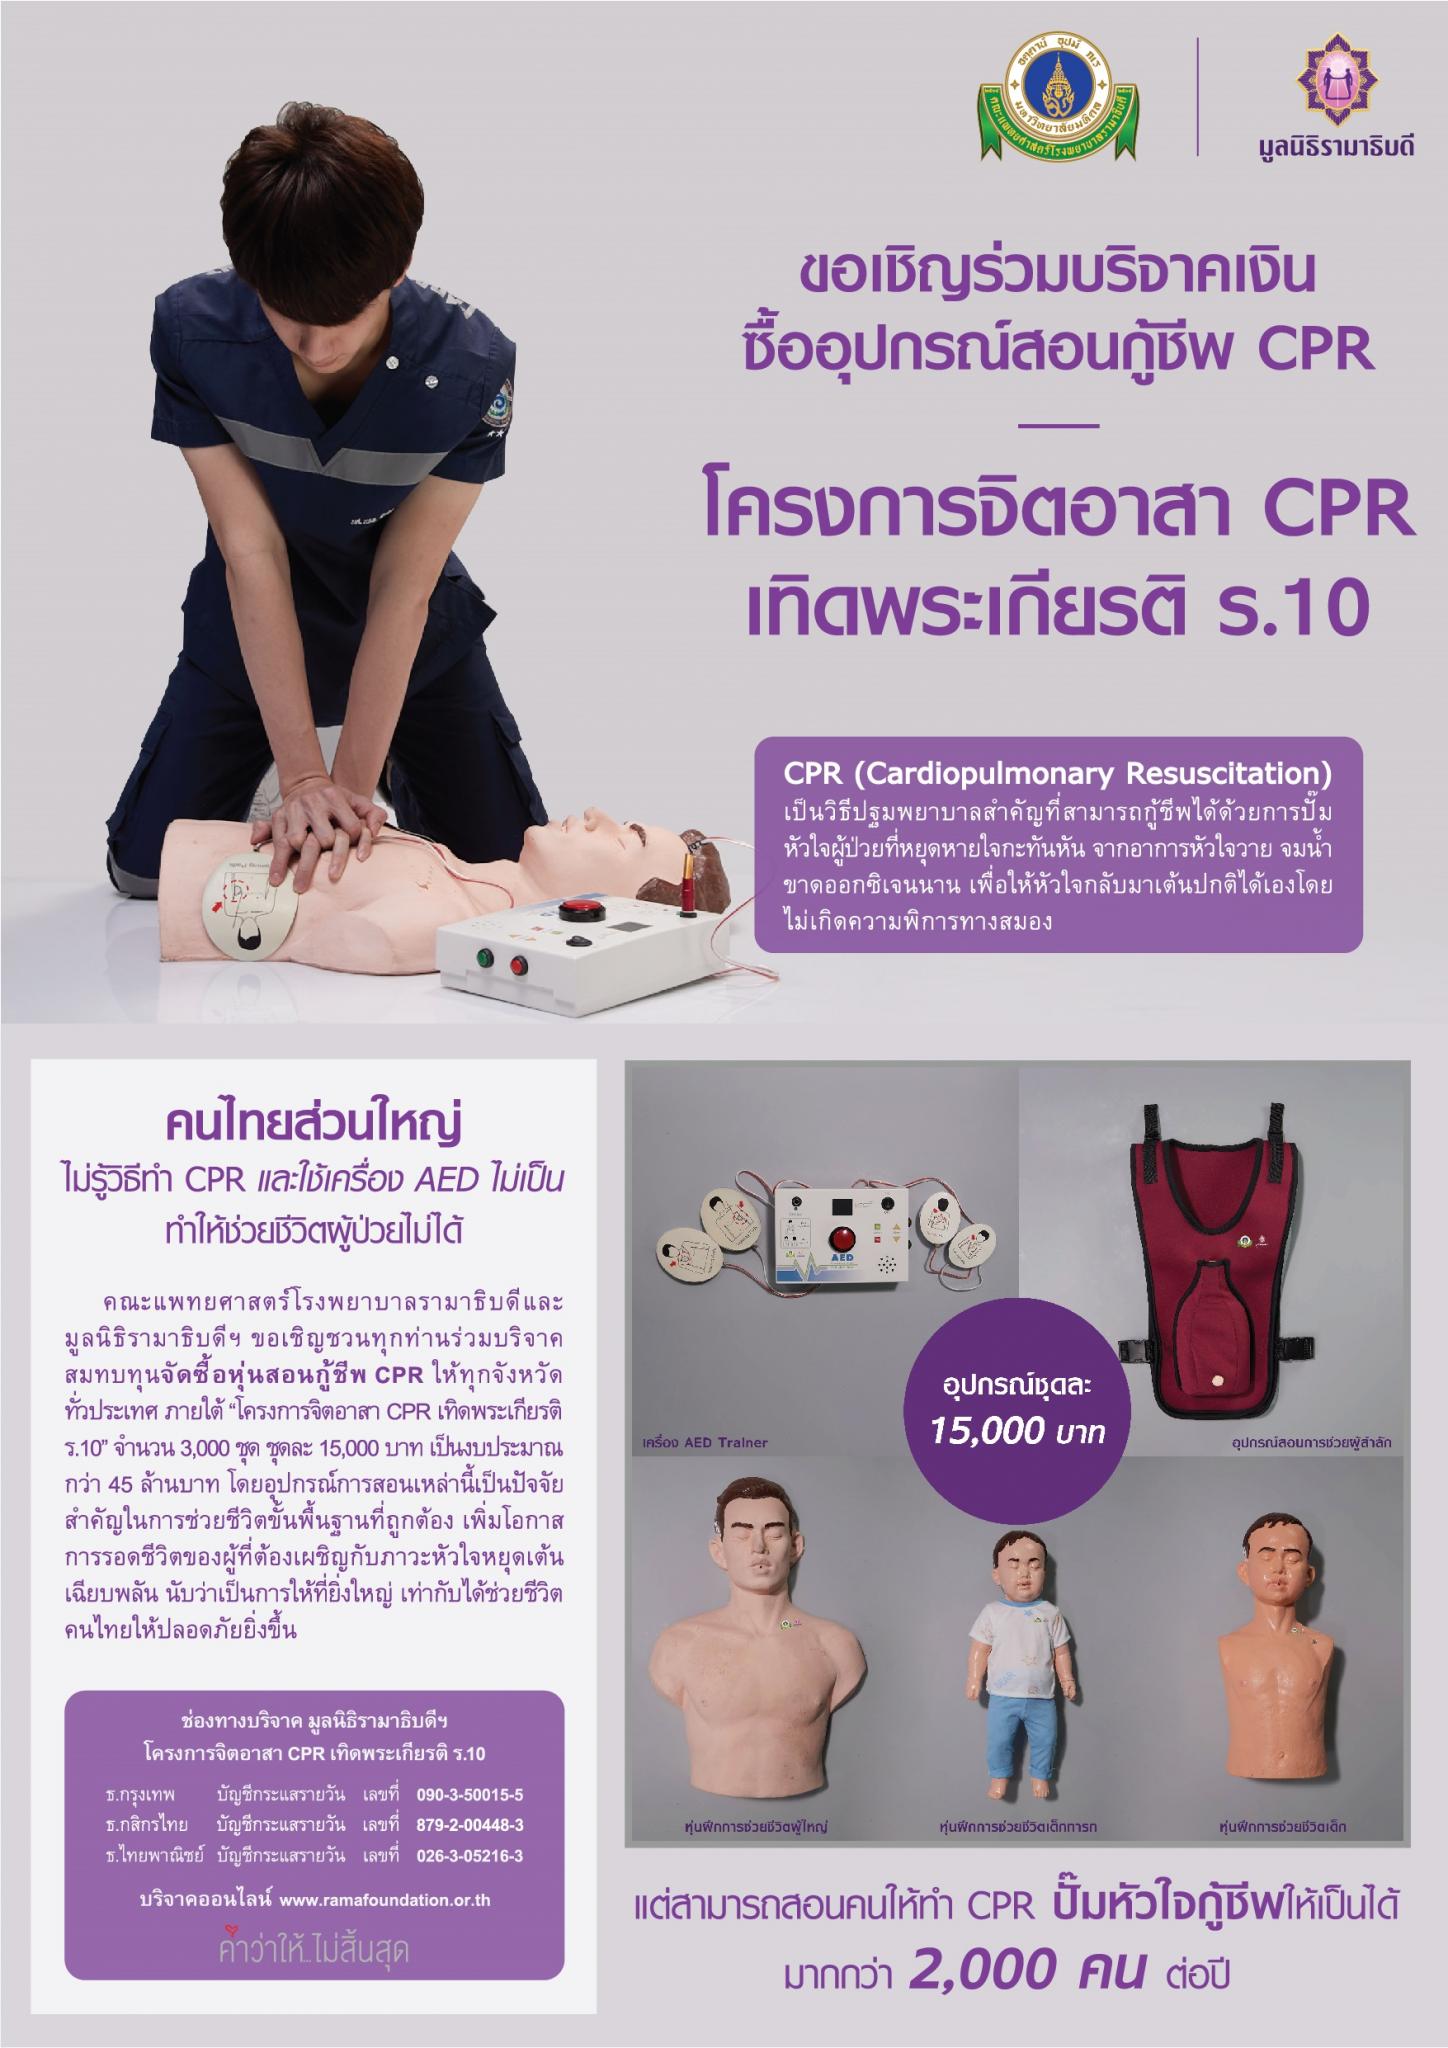 ขอเชิญร่วมบริจาคเงินซื้ออุปกรณ์สอนกู้ชีพ CPR 